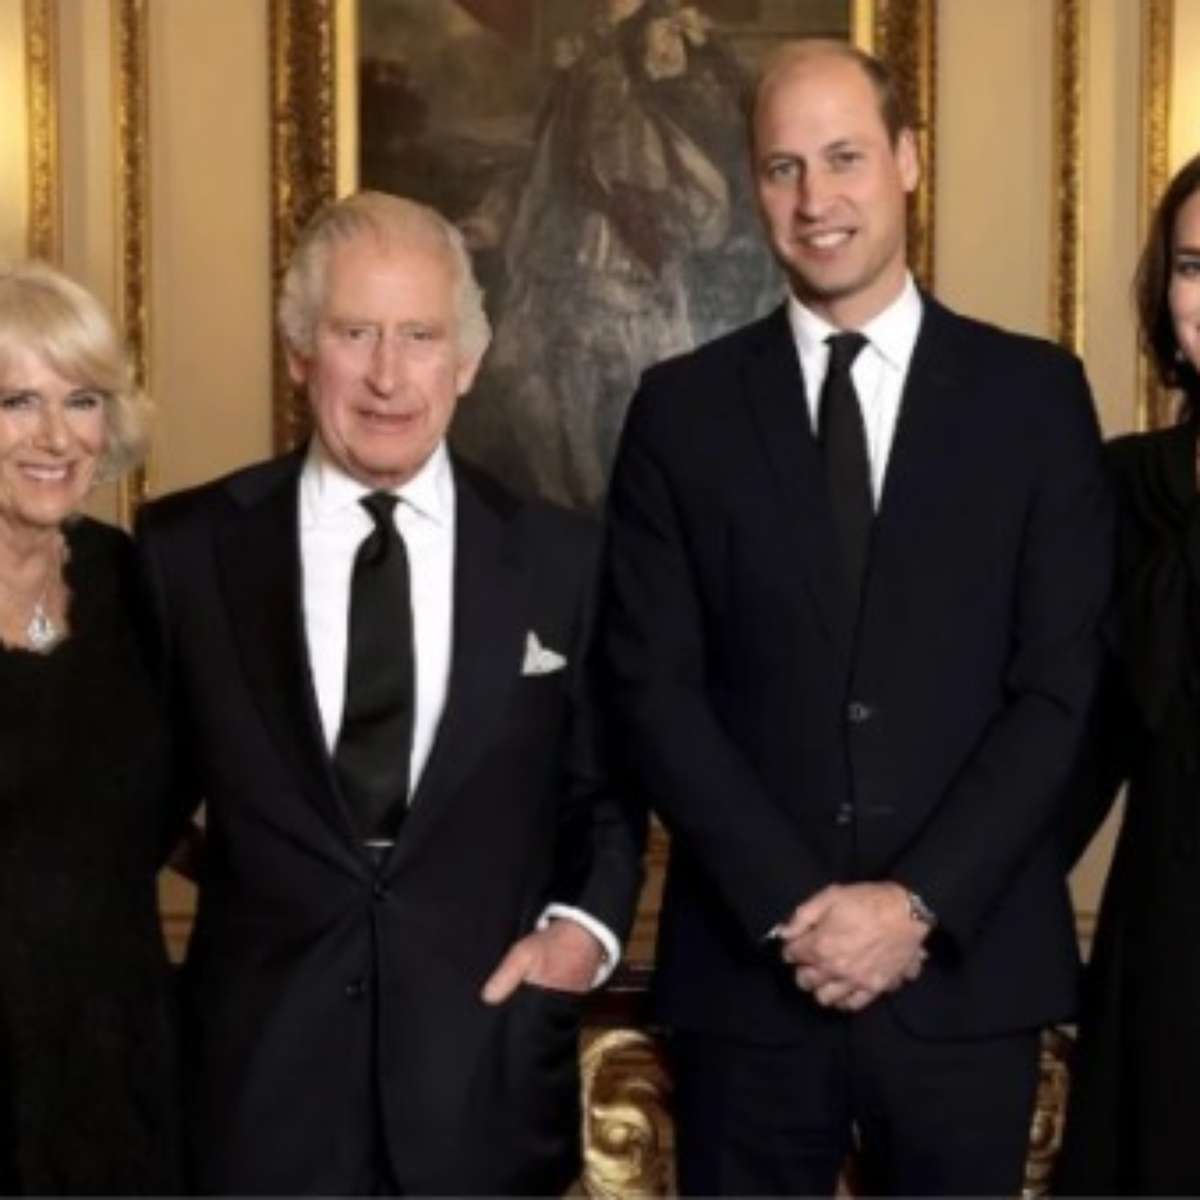 Jovem cearense aparece em redes sociais da família real britânica